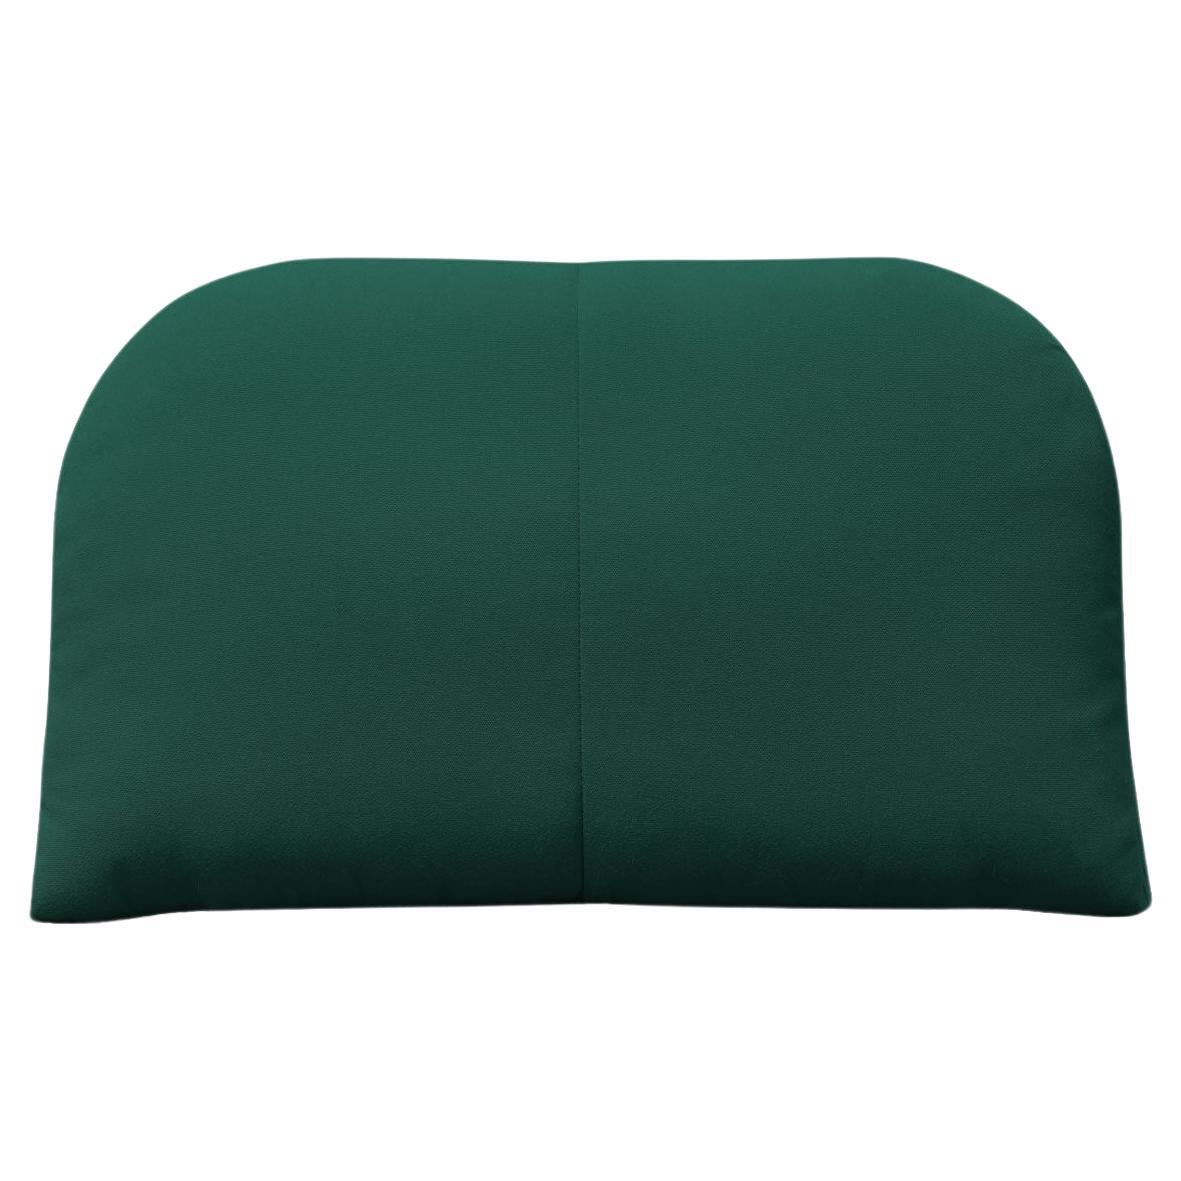 Bend Goods - Arc Throw Pillow in Forest Green Sunbrella